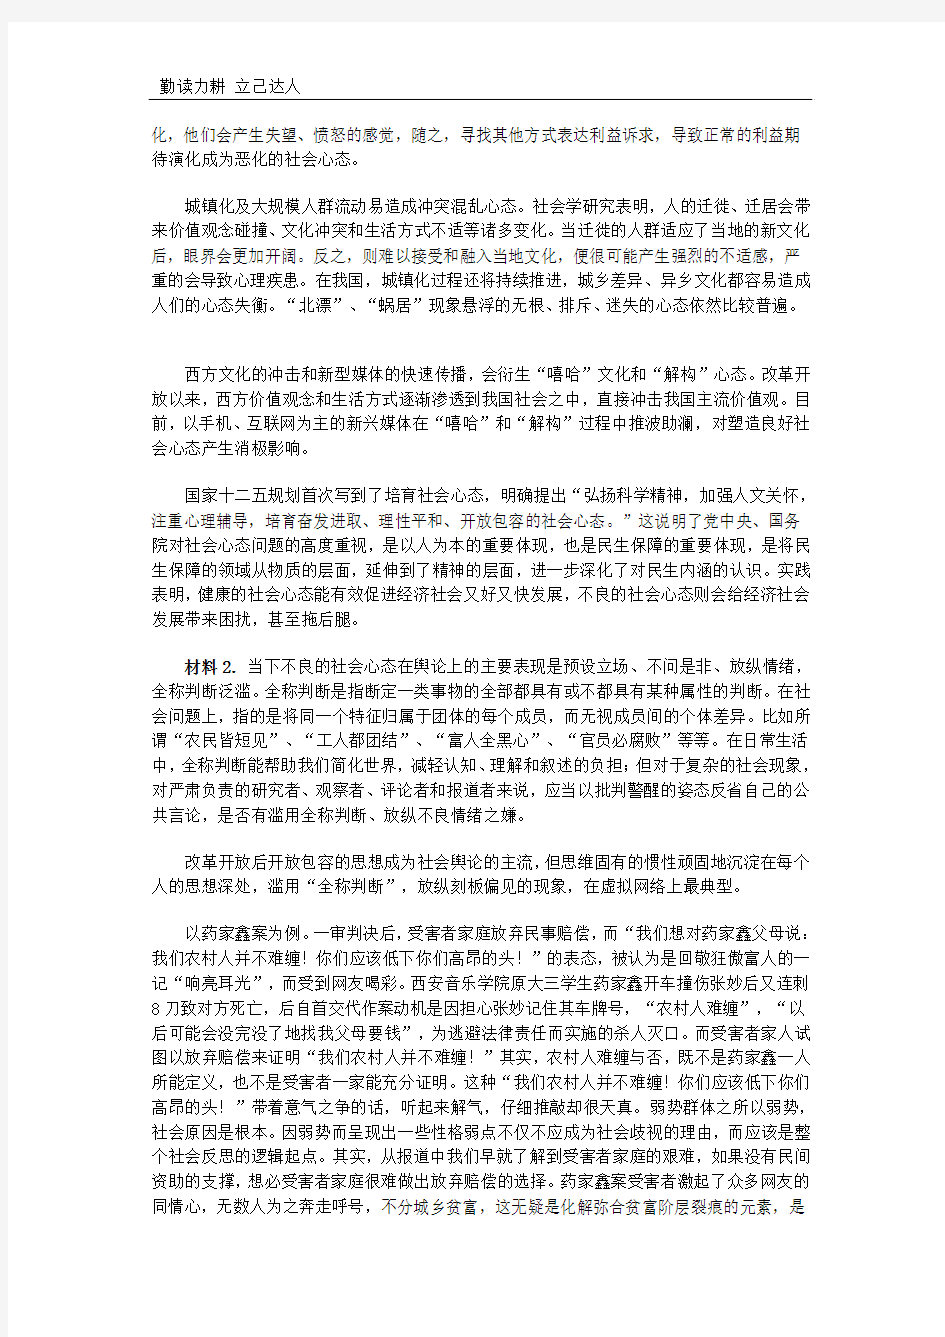 A2013年广东省公务员考试申论模拟试题及答案解析(卷三)